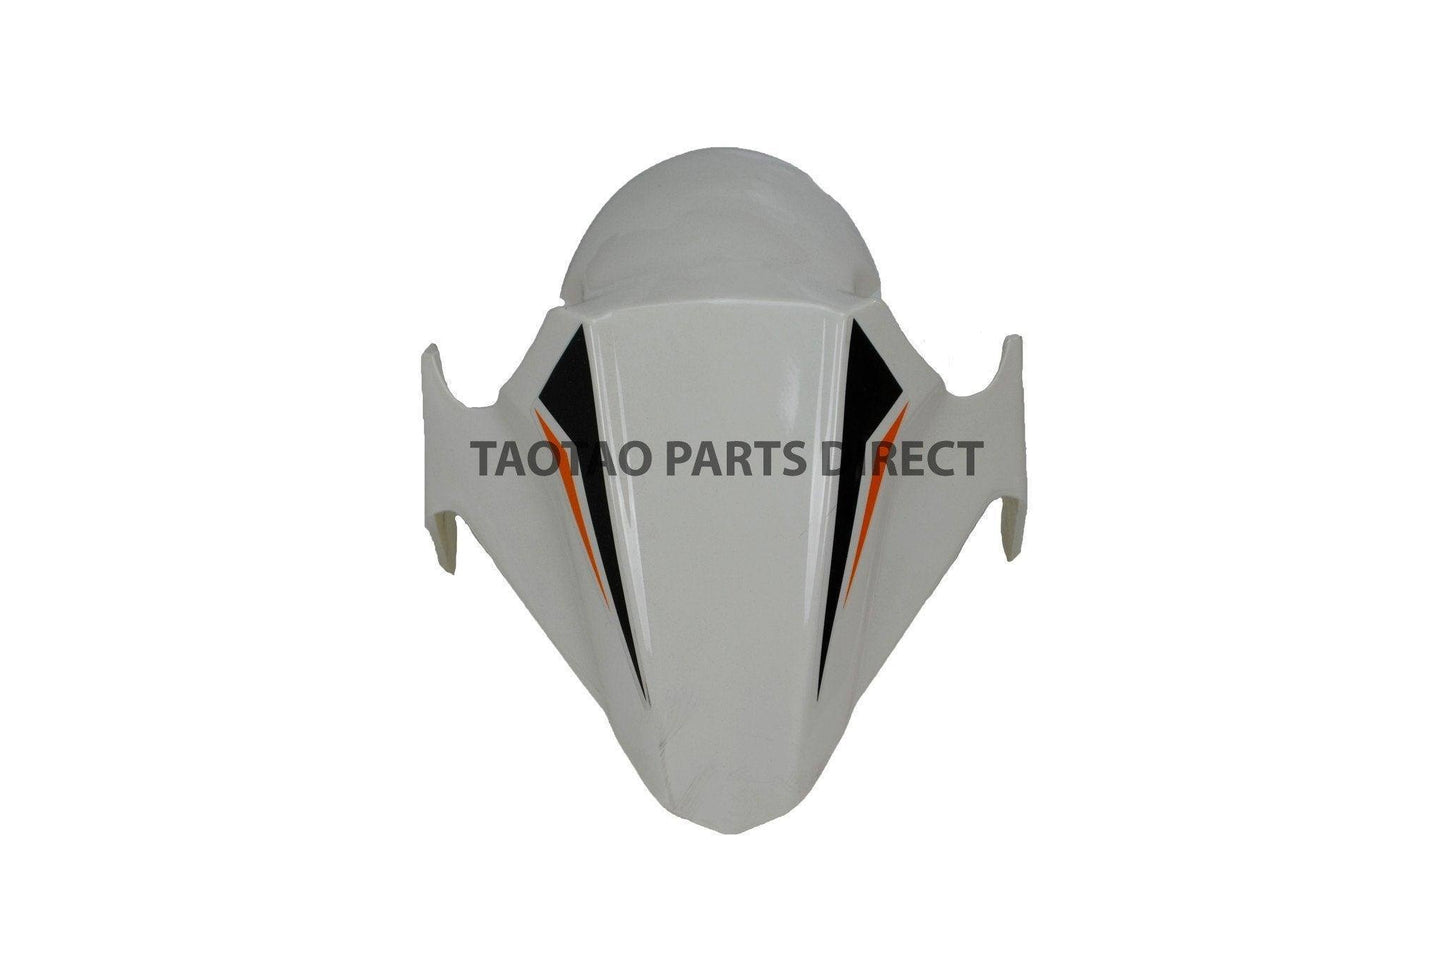 Thunder 50 Front Fender - TaoTaoPartsDirect.com